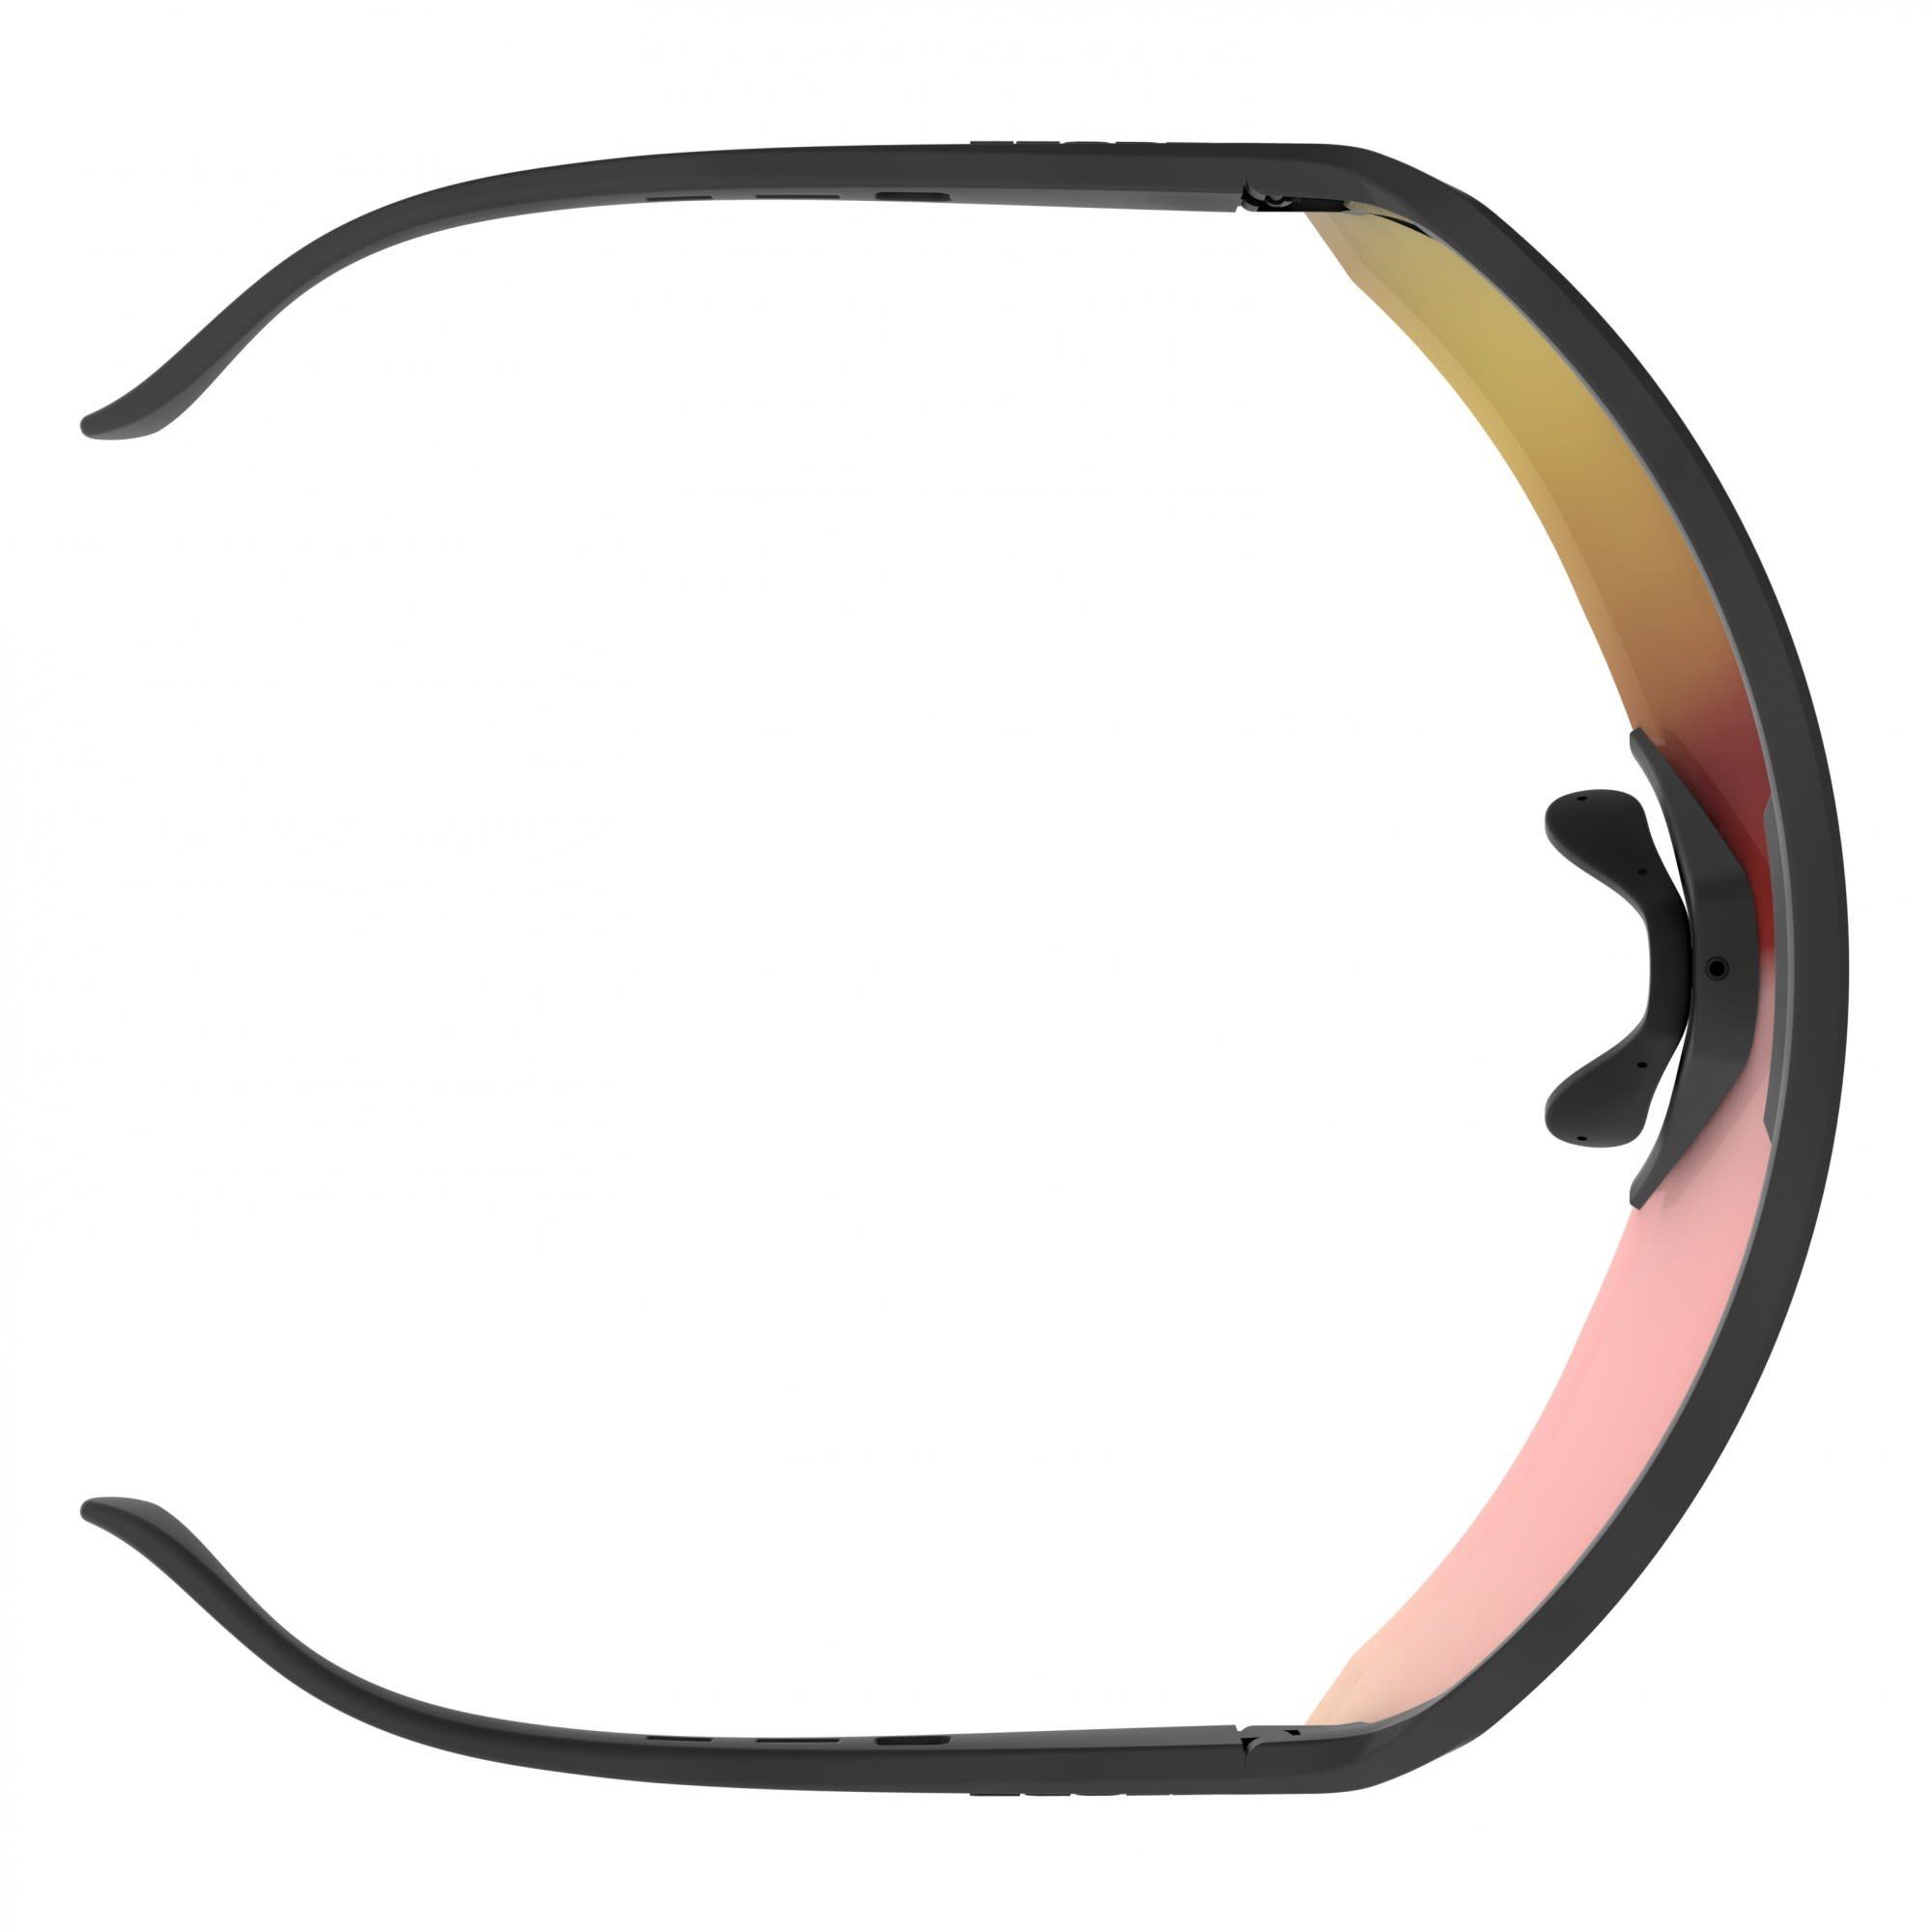 Scott Fahrradbrille Scott Sport Shield - Accessoires Sunglasses Red Chrome Black